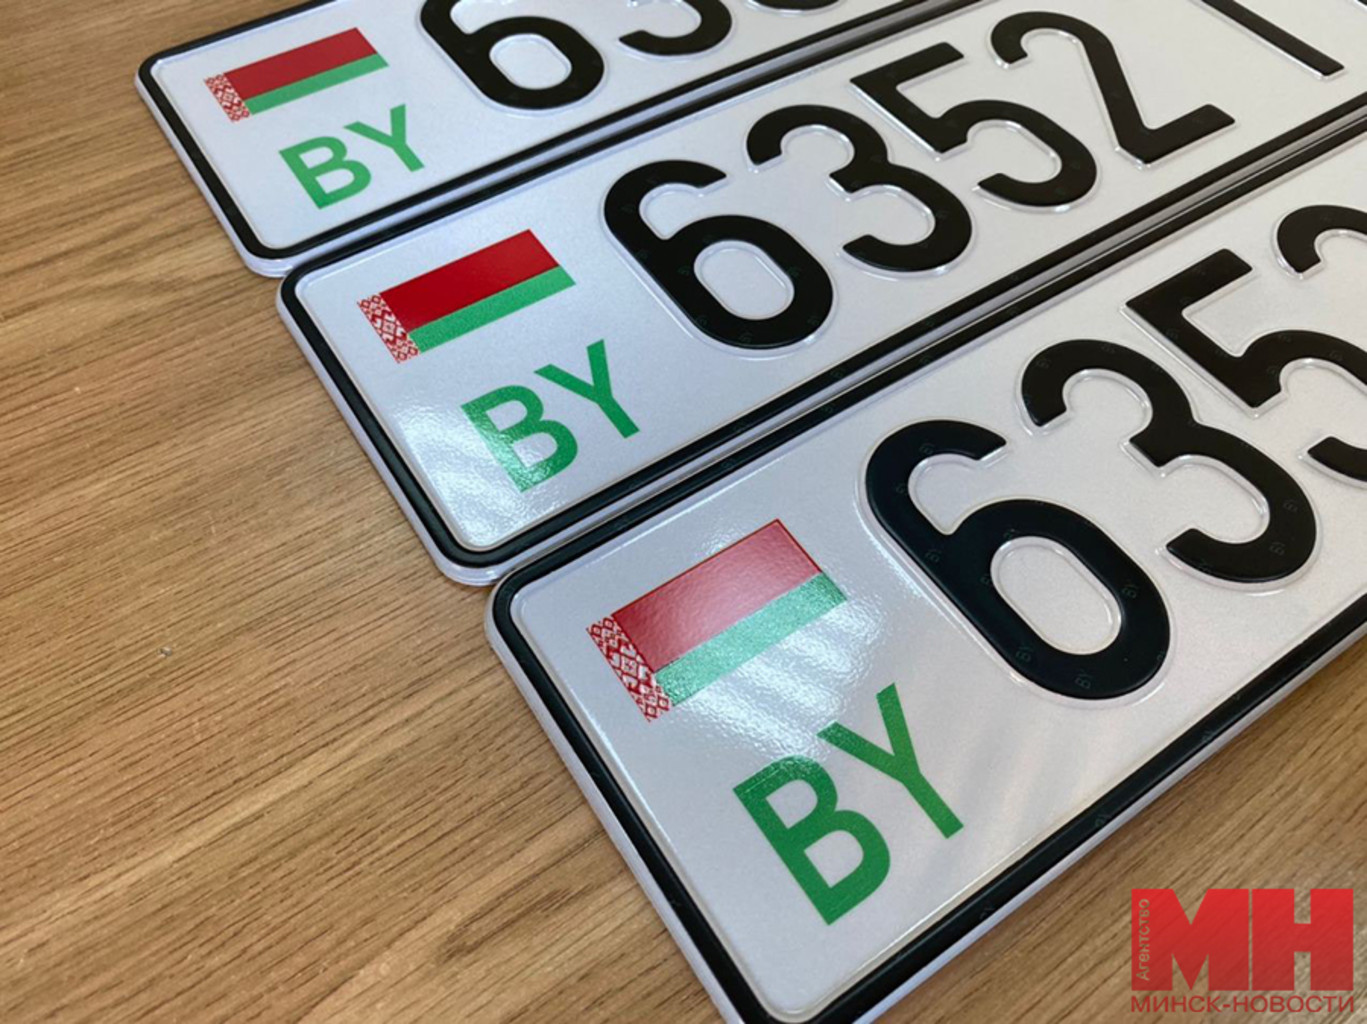 Код номера белоруссии. Белорусские автомобильные номера. Белорусские номера машин. Белорусские номерные знаки. Номерной знак автомобиля Белоруссии.